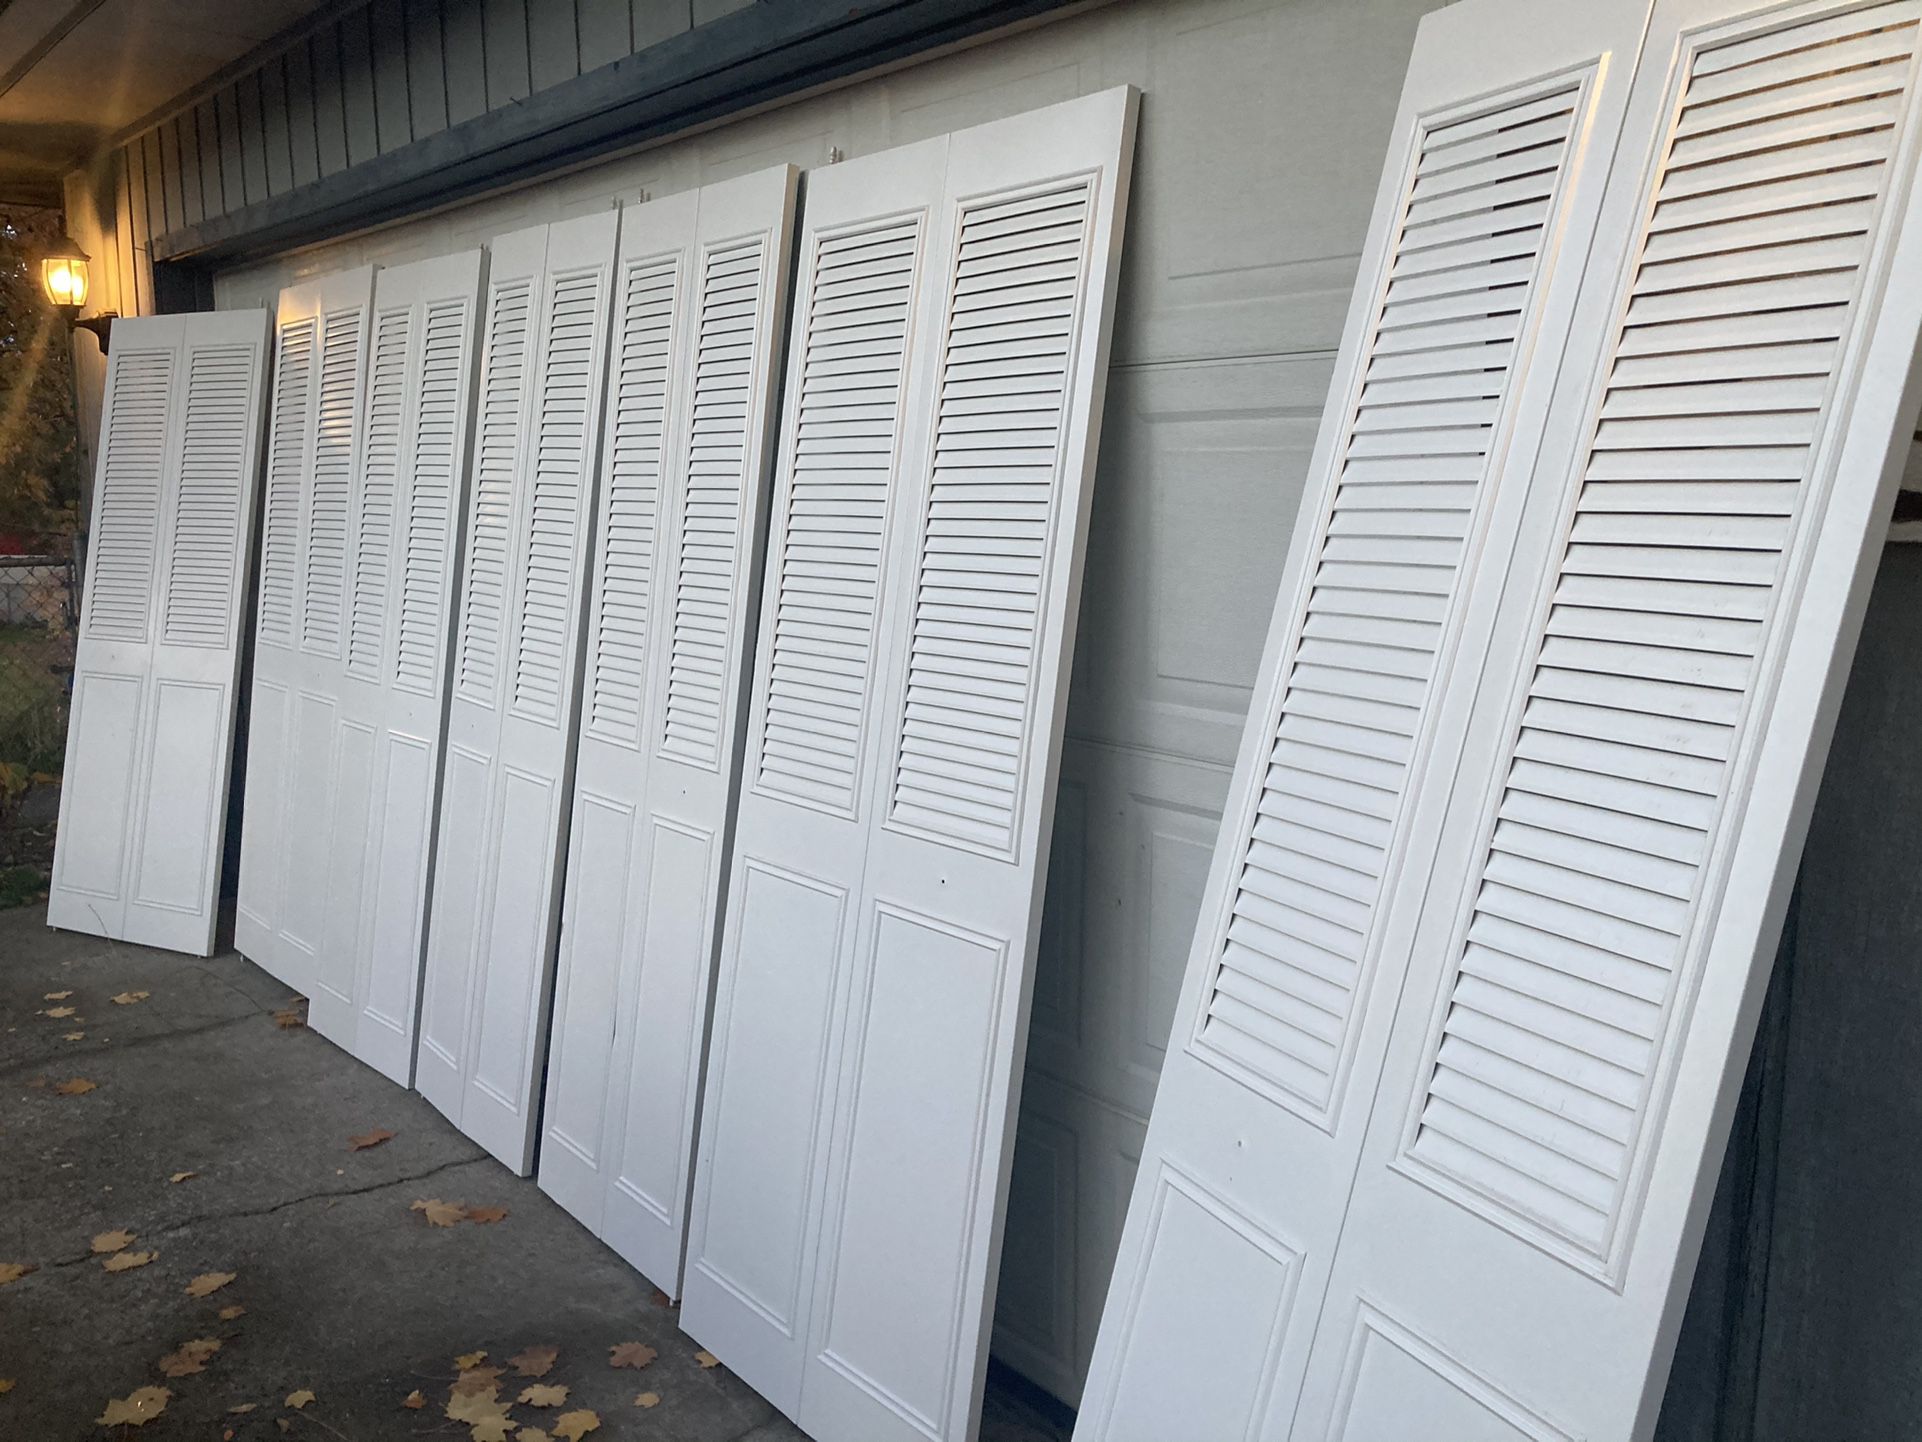 Metal bifold door closet doors, Freshly spray painted    